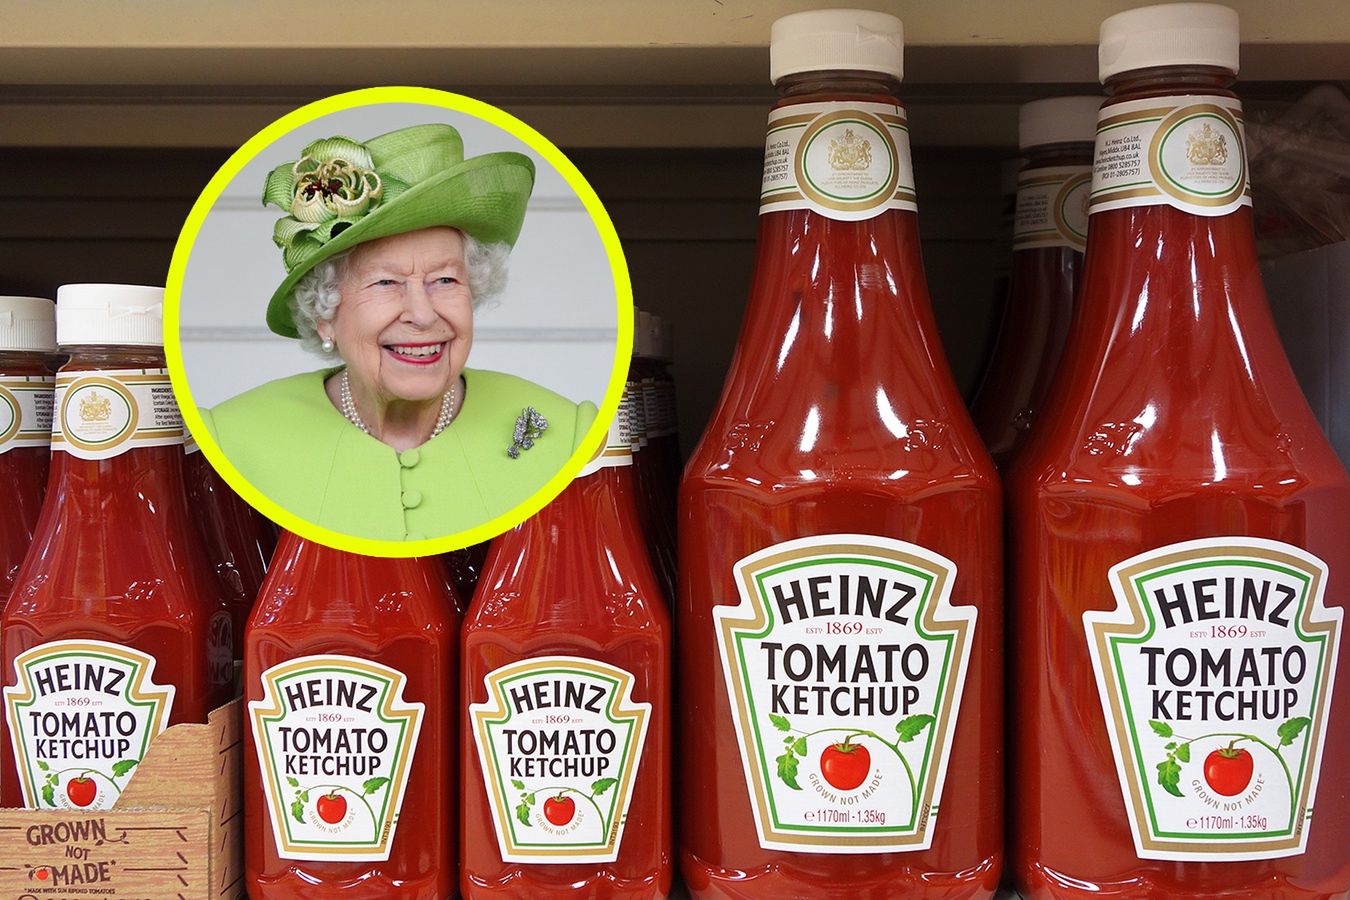 Znana marka musi zmienić etykietę po śmierci królowej